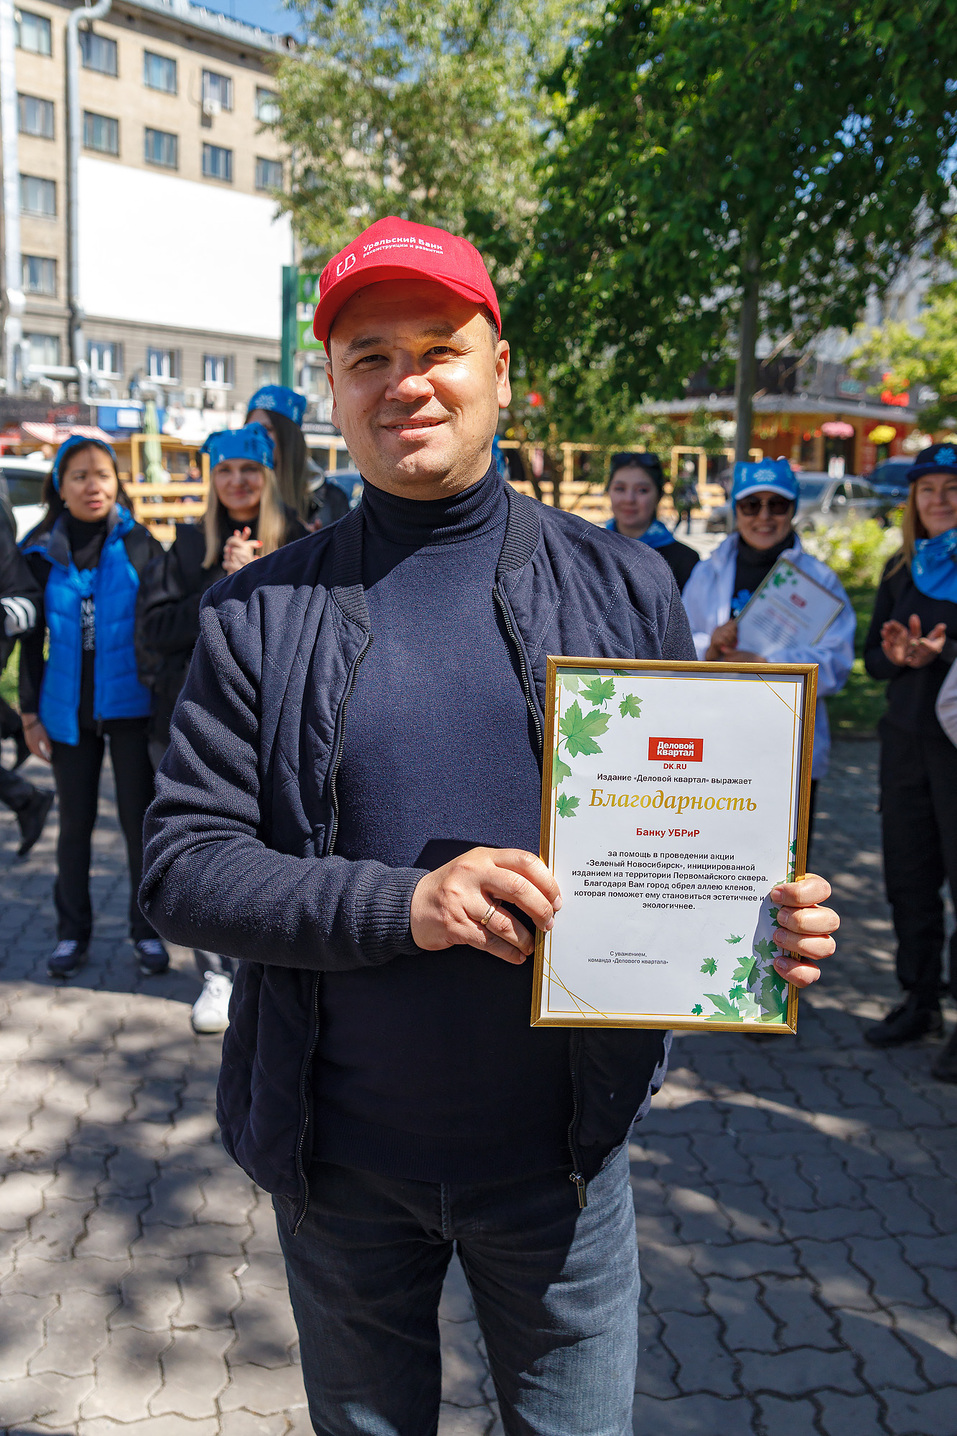 Издание «Деловой квартал» и новосибирское бизнес-сообщество подарили городу зеленую аллею 86